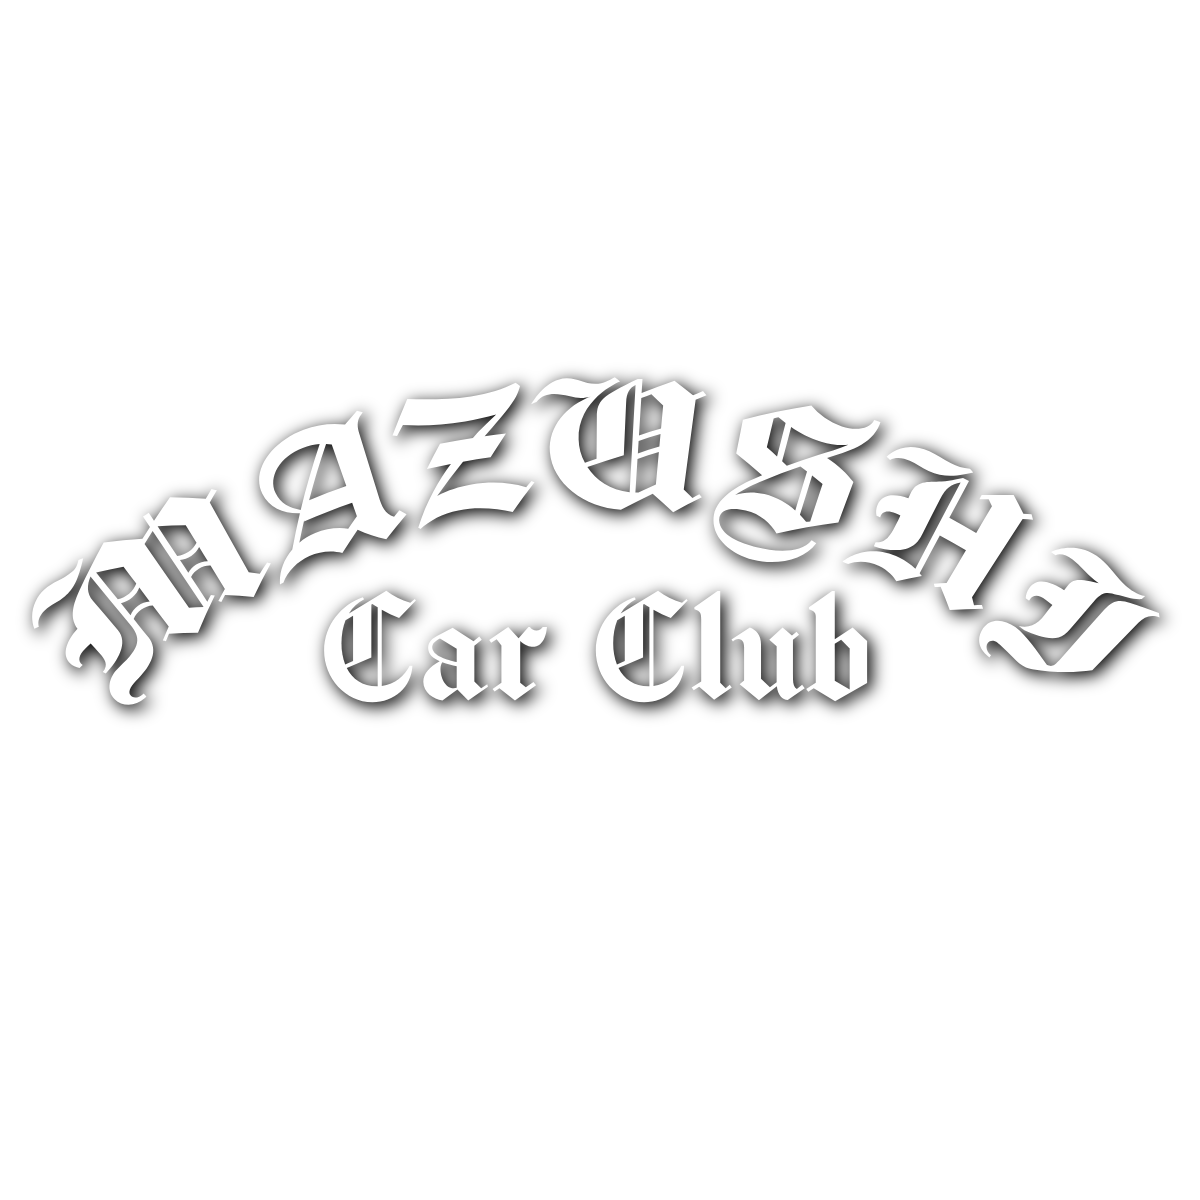 Mazushi Car Club Banner - Mazushi